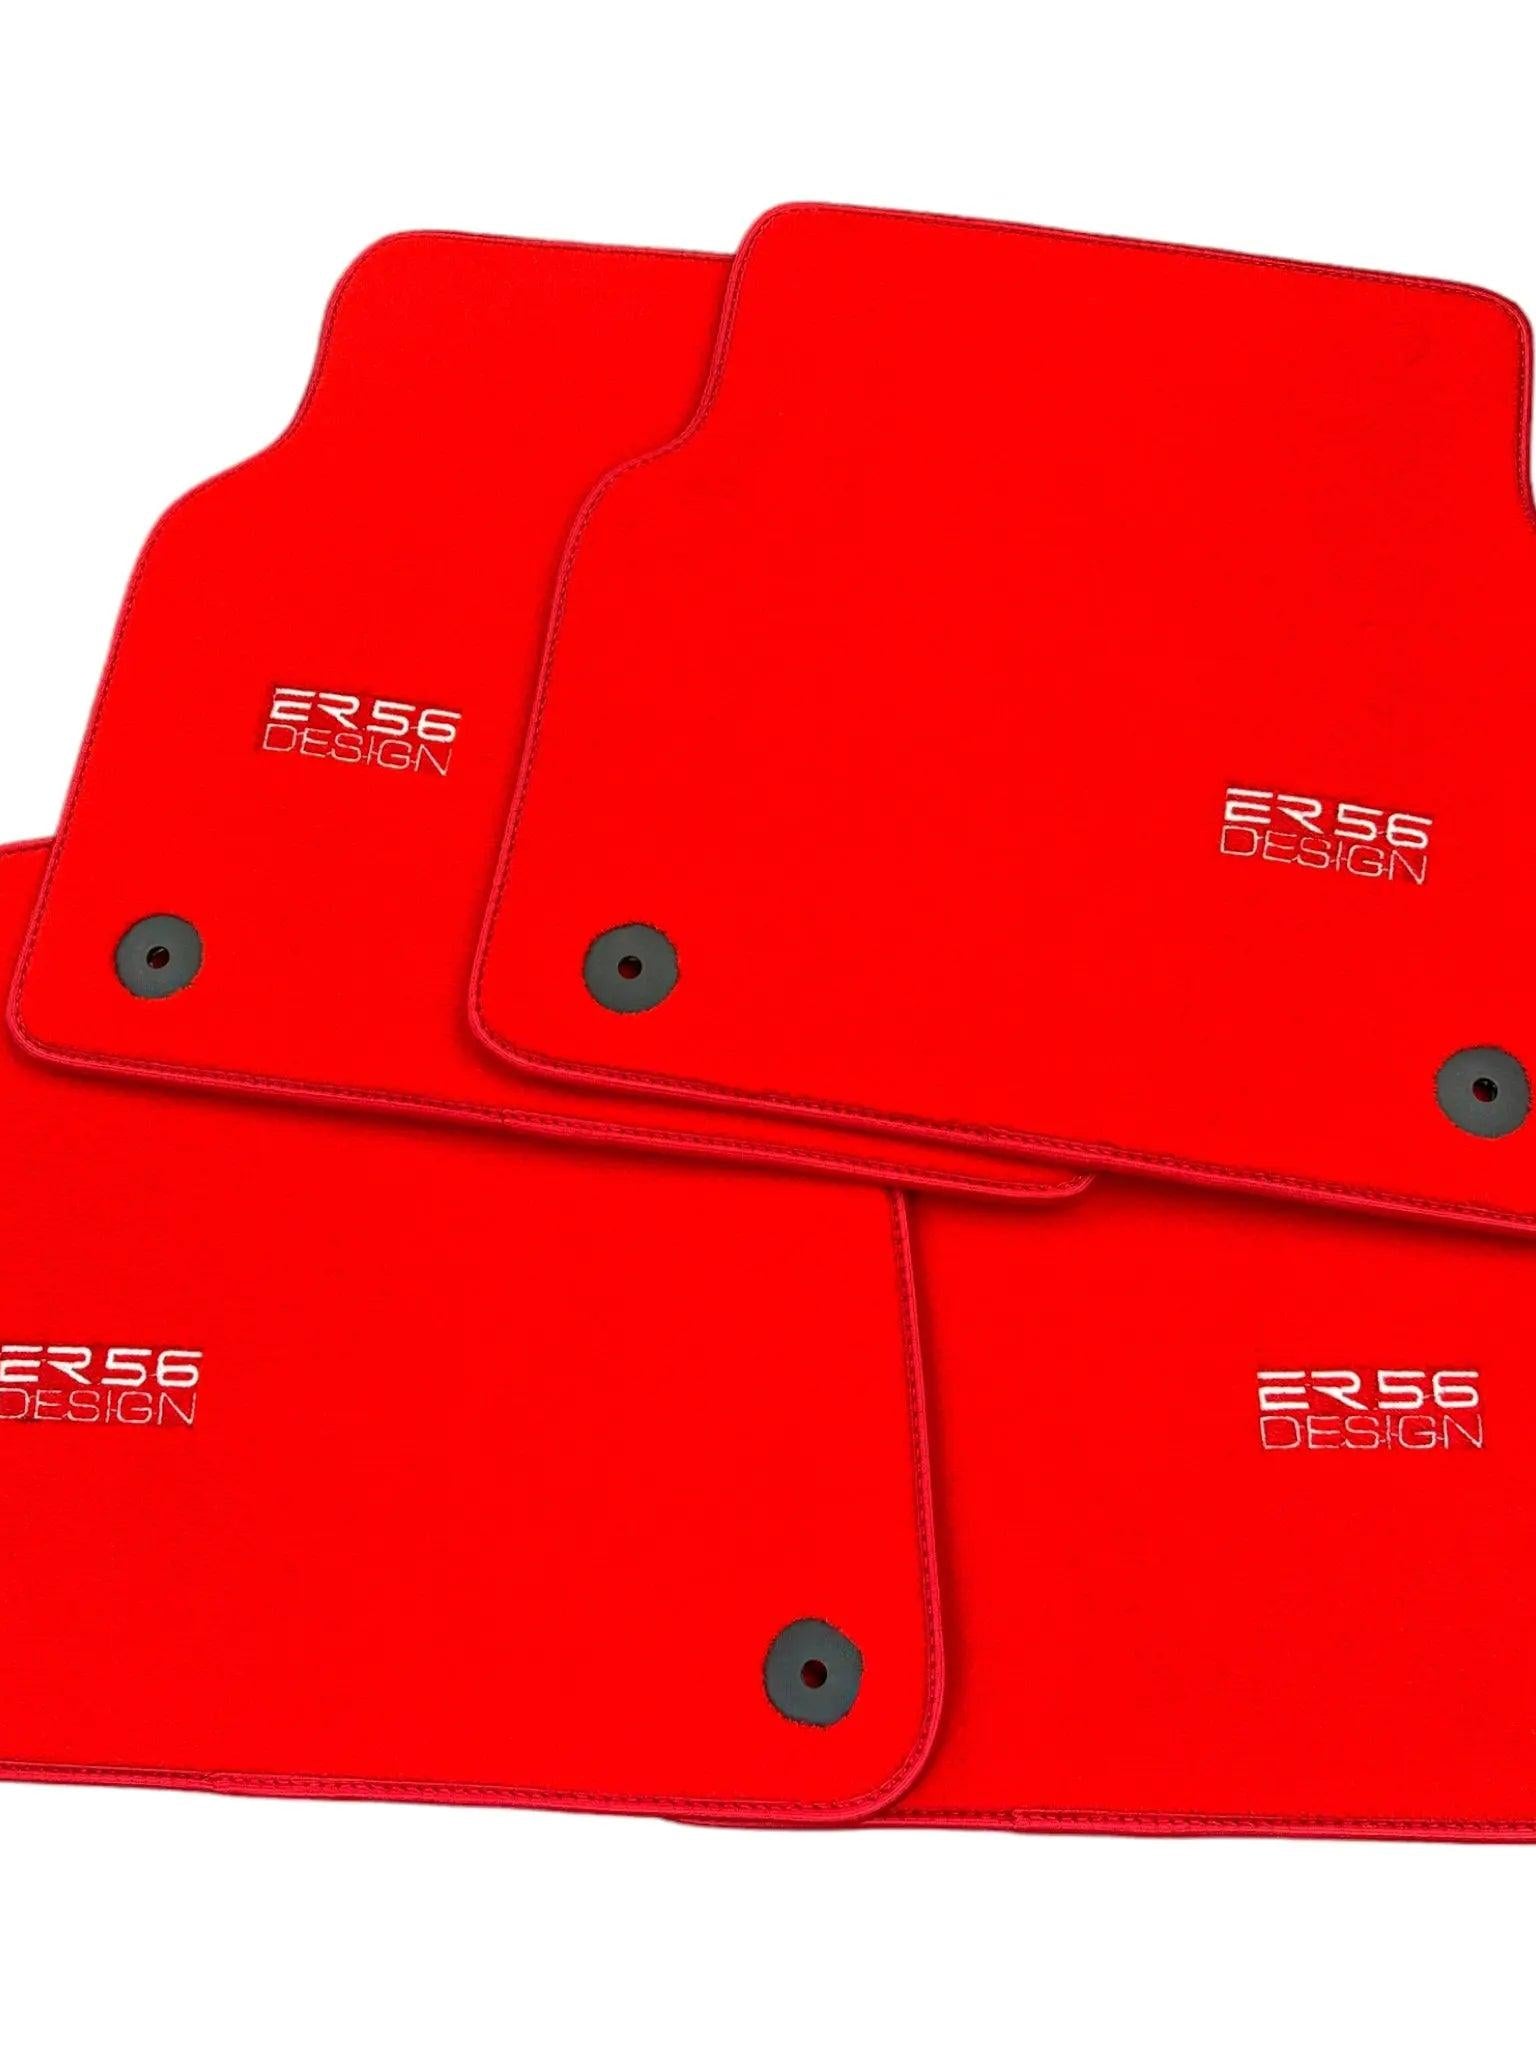 Red Floor Mats for Audi A3 - Convertible (2008-2013) | ER56 Design